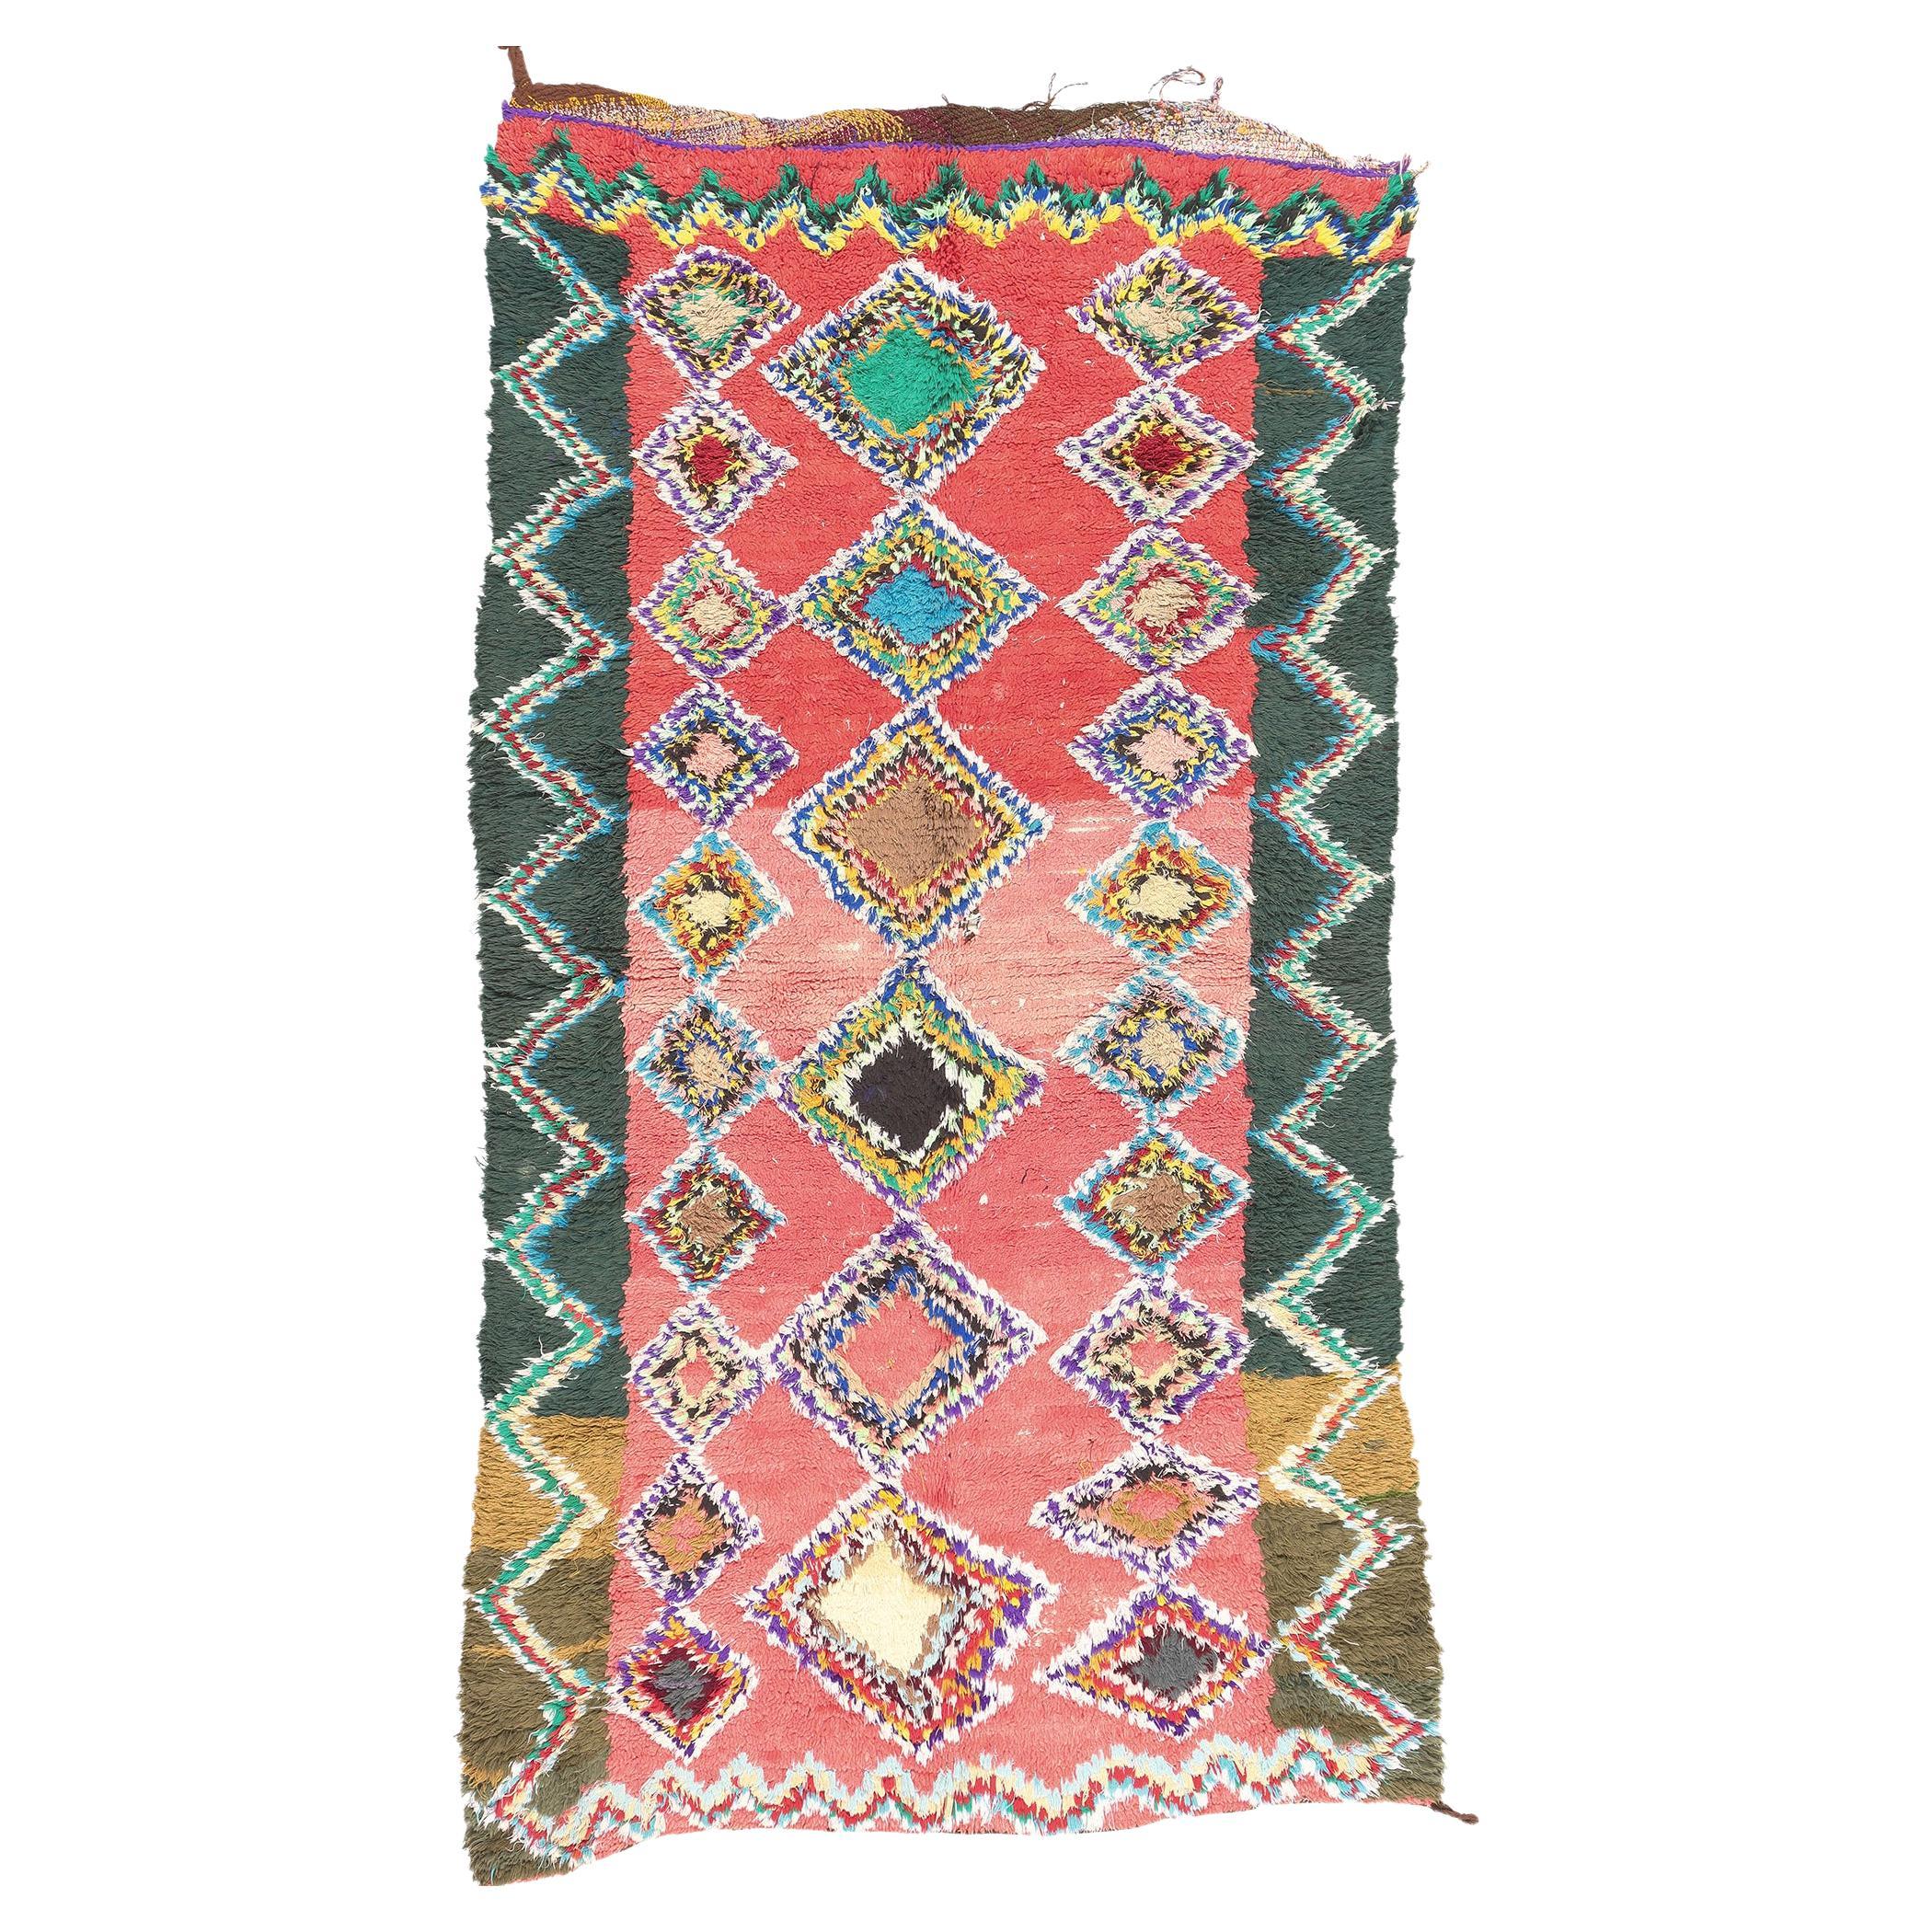 Vintage Boucherouite marokkanischen Azilal Rag Teppich von Berber Tribes of Morocco